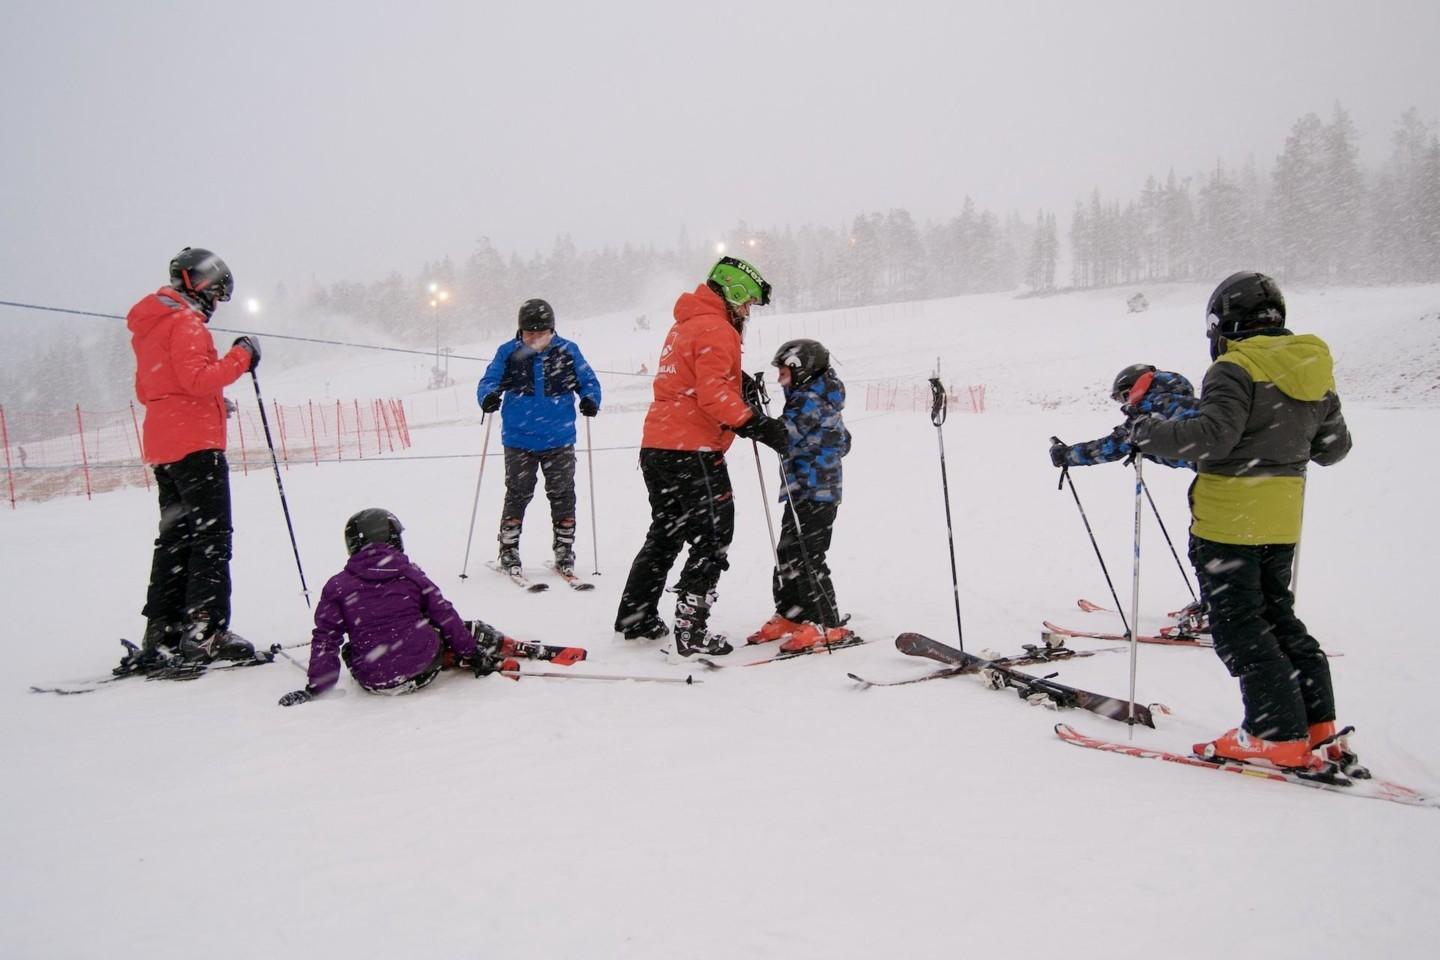 Saariselkä Ski & Sport Resort - Bike Park & ski slopes | Lapland North